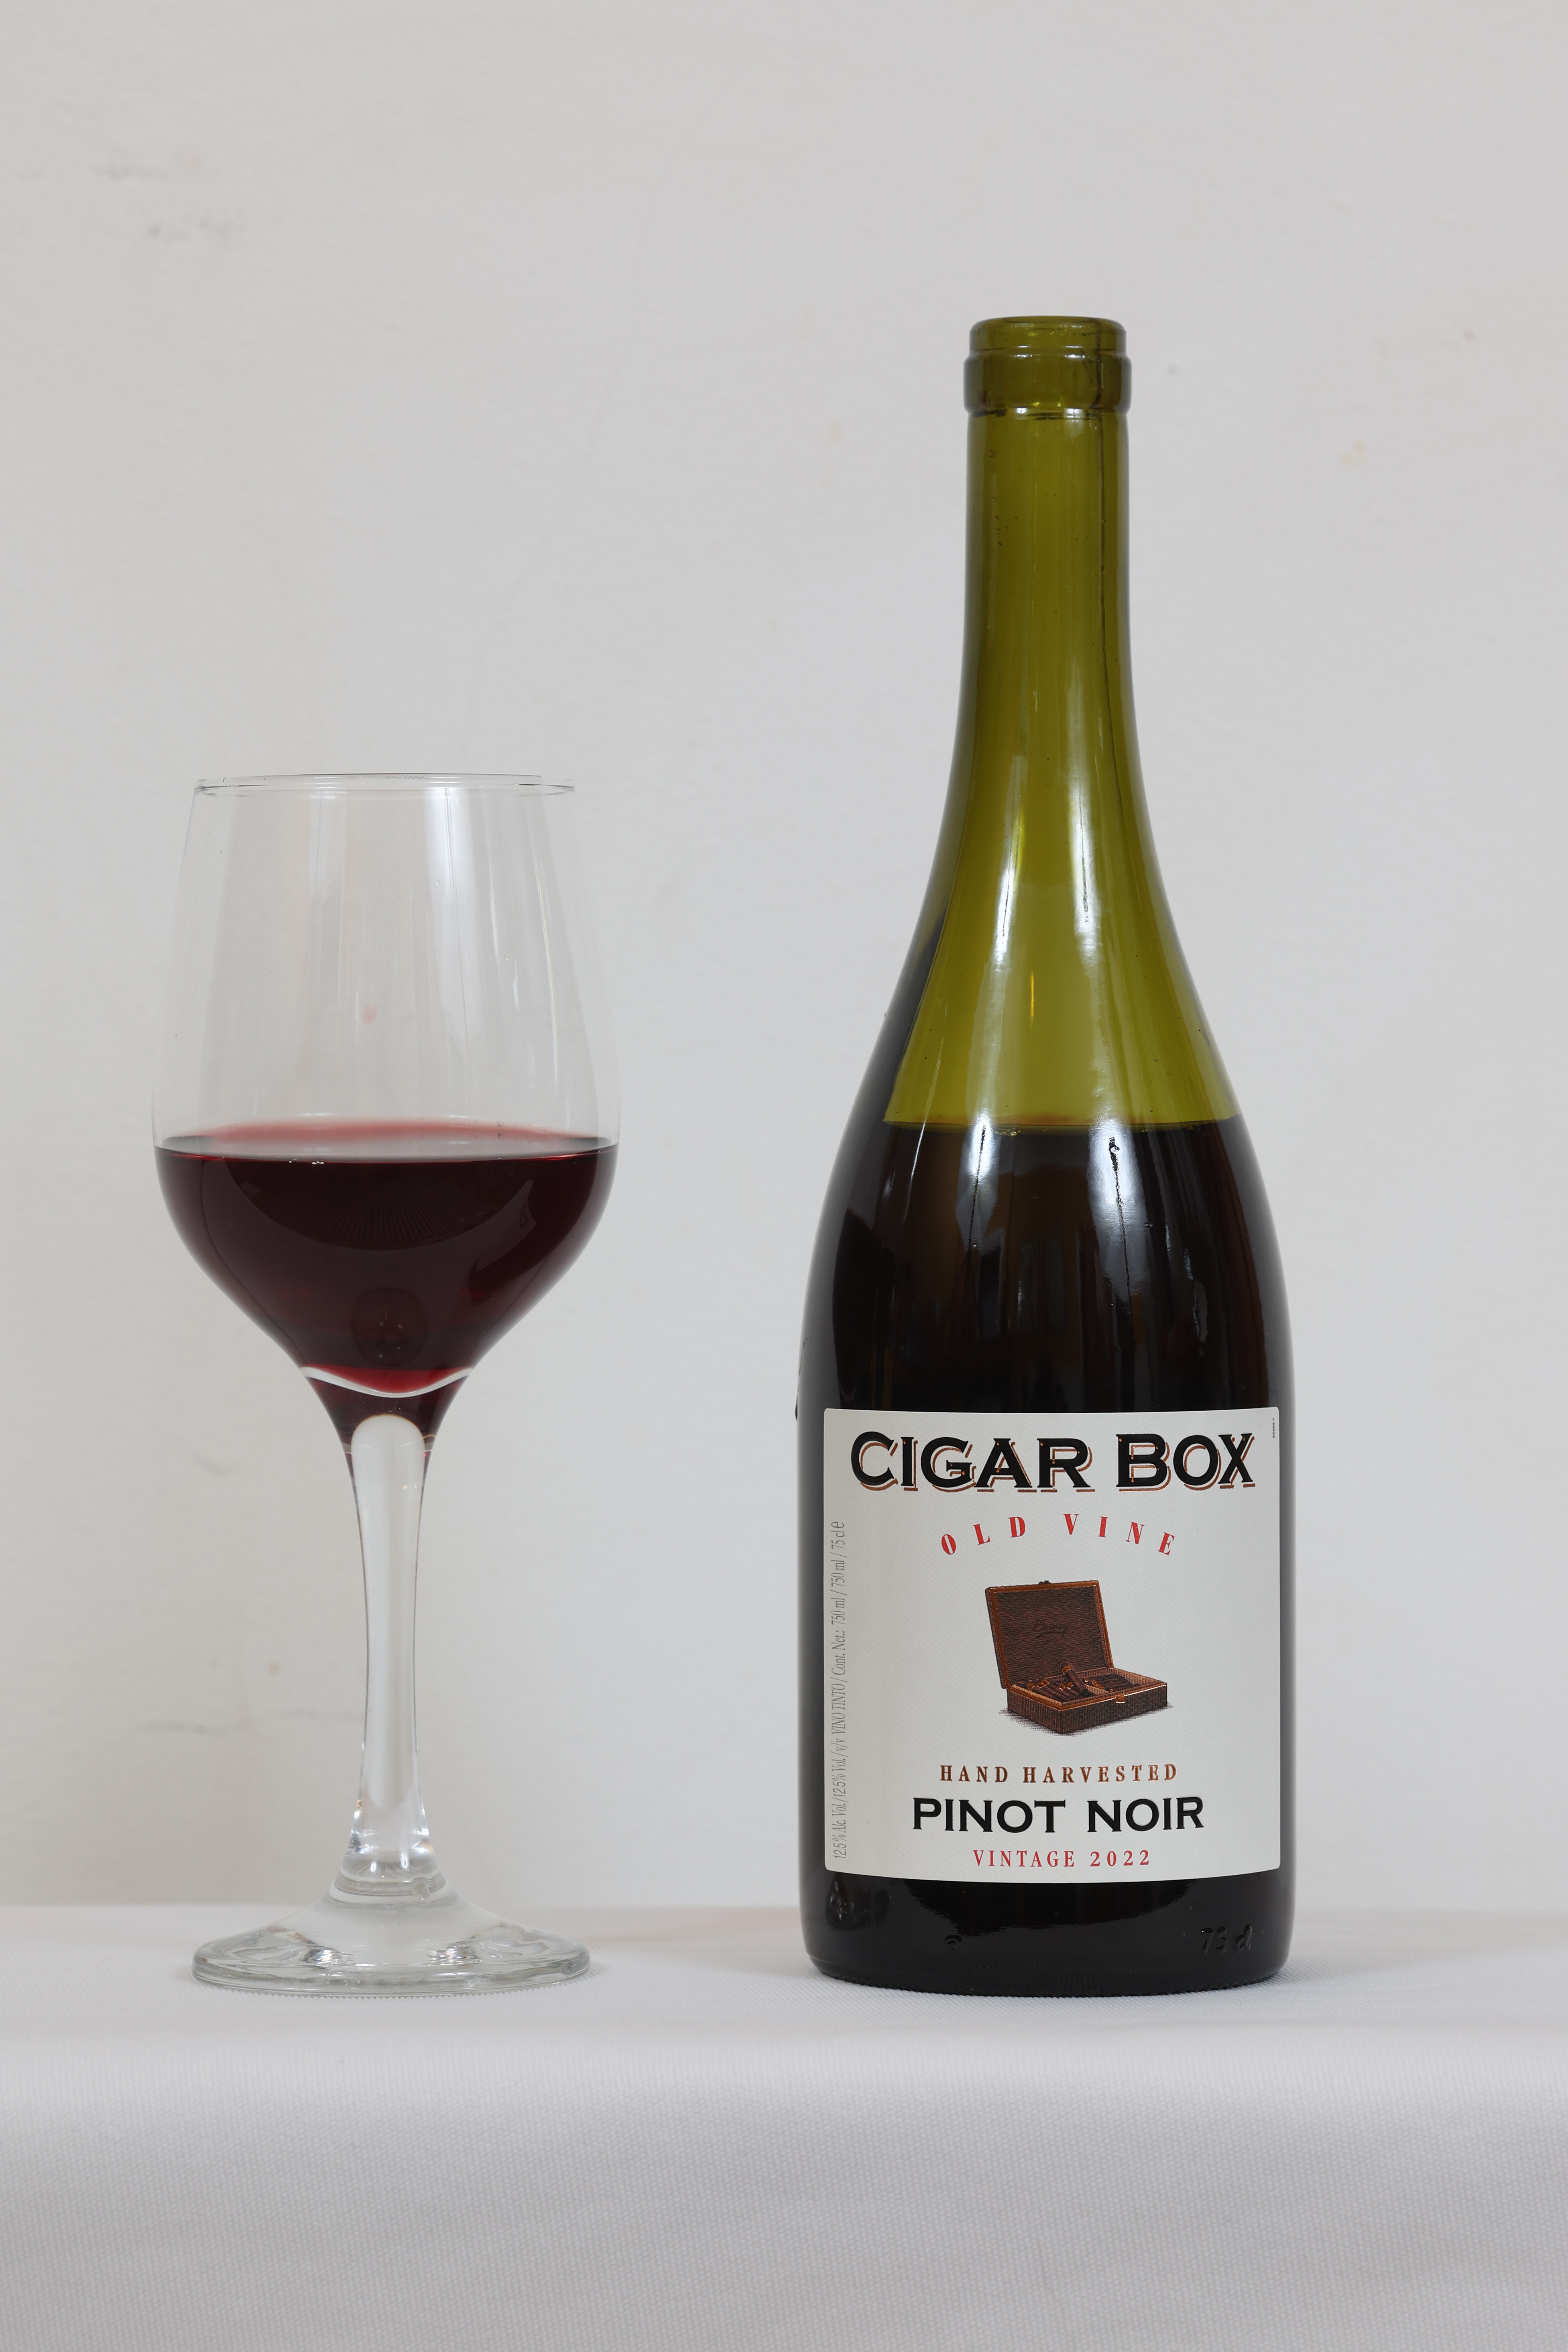 Zigarrenschachtel Old Vine Pinot Noir, £7,99, Lidl